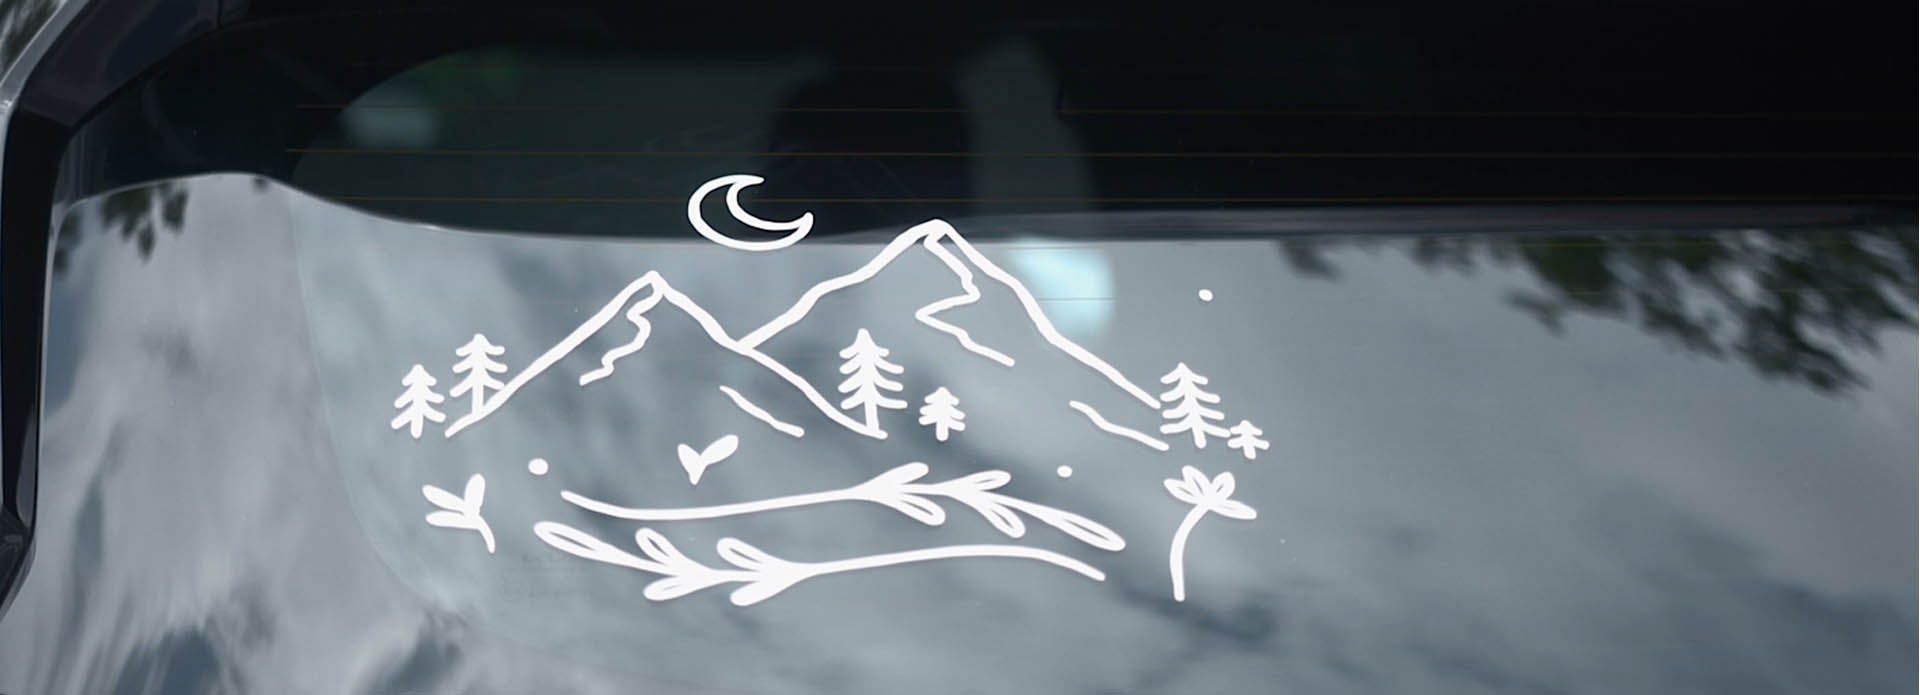 A mountain scene car window sticker